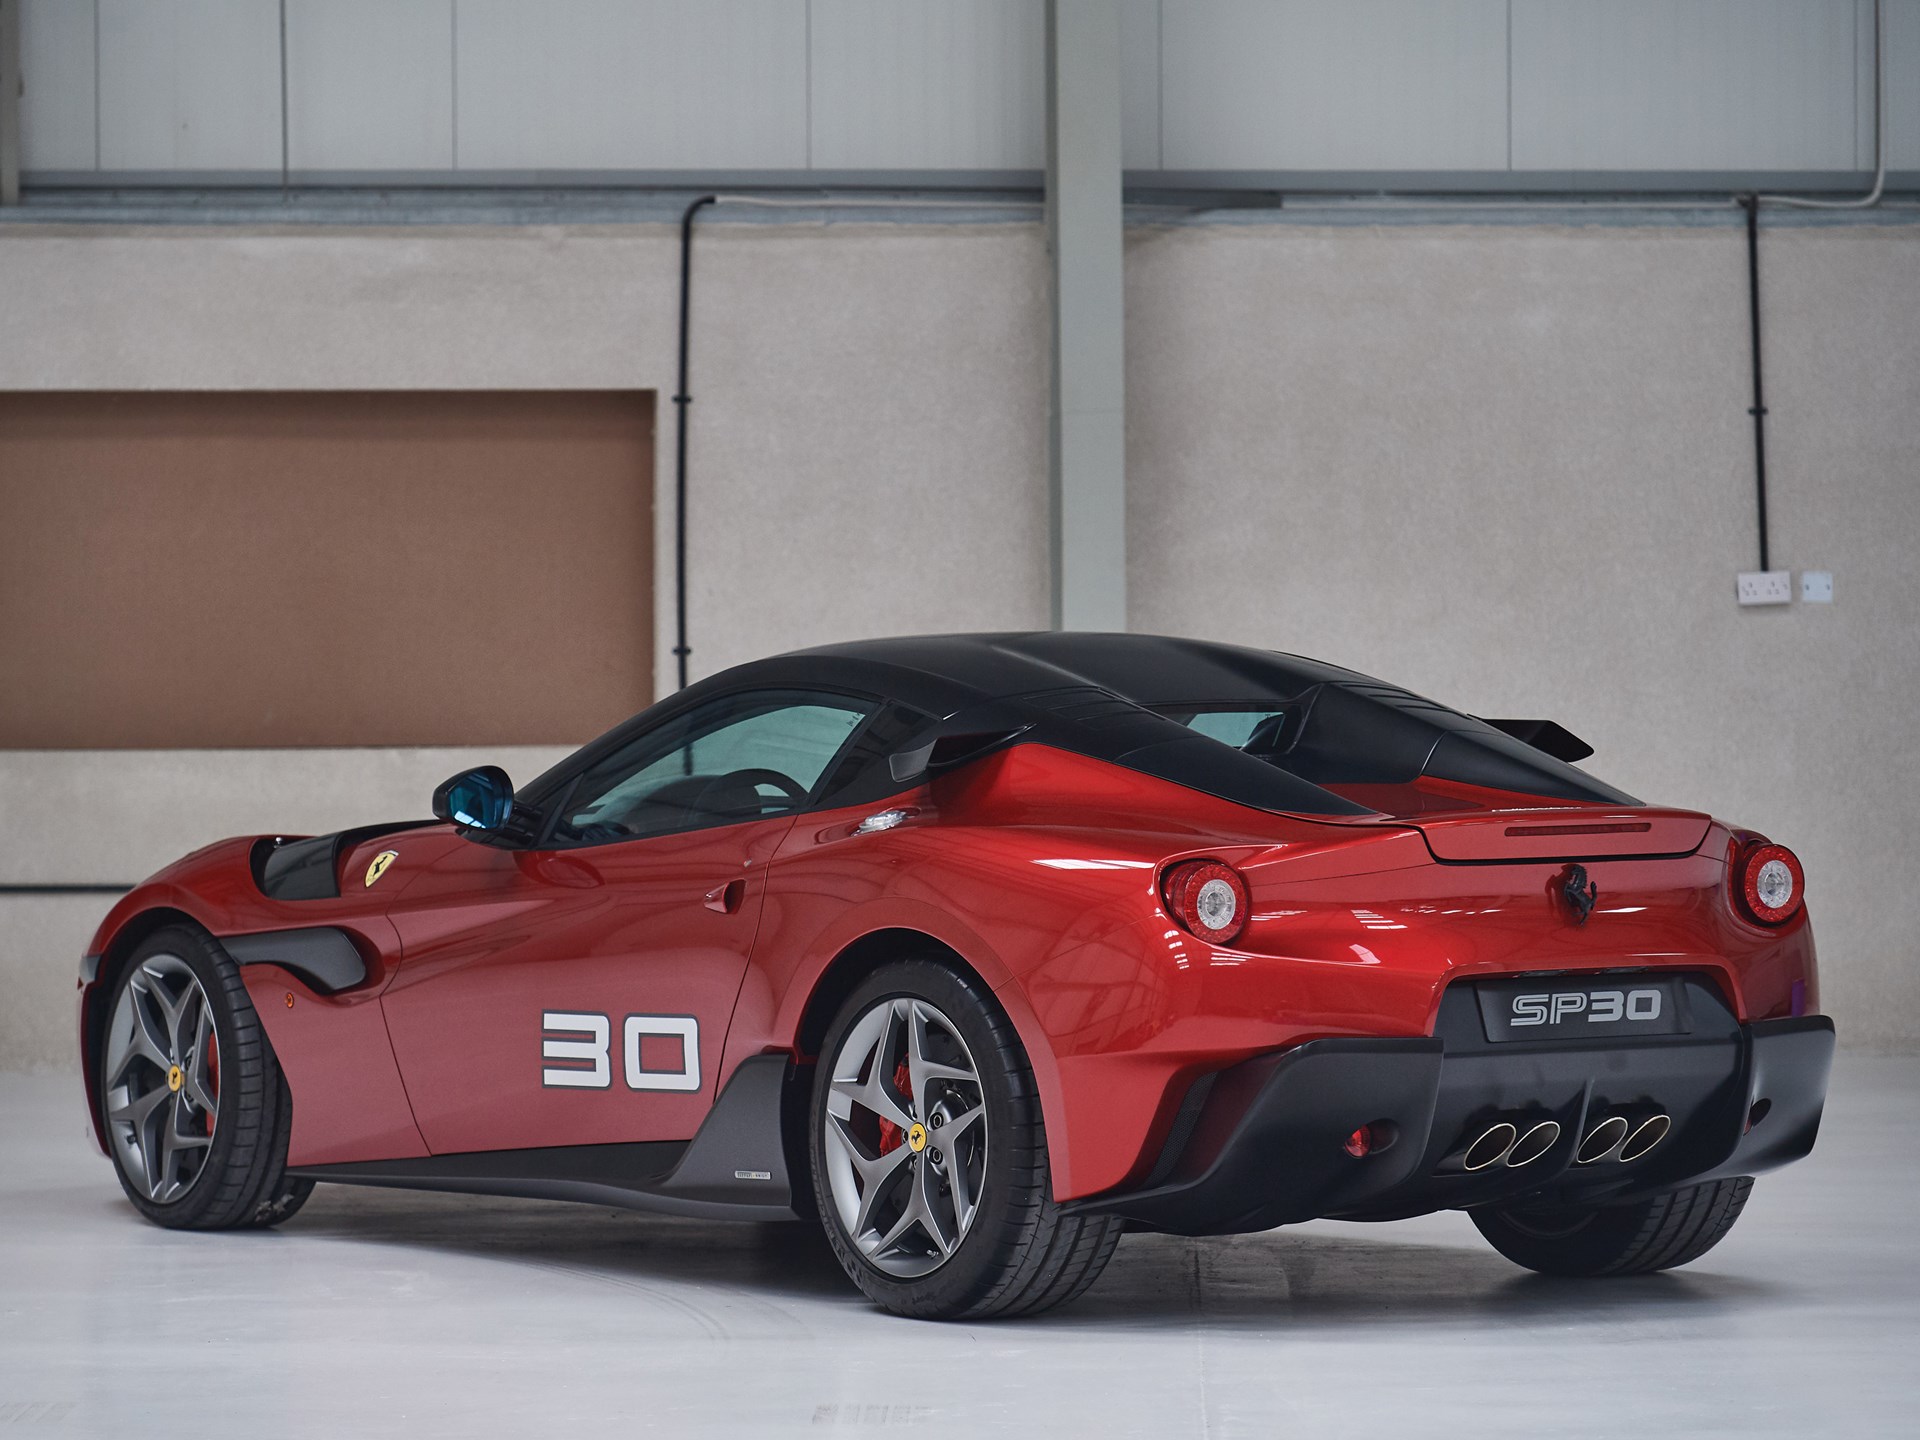 Ferrari SP30 one-off - Car Week Paris 2019